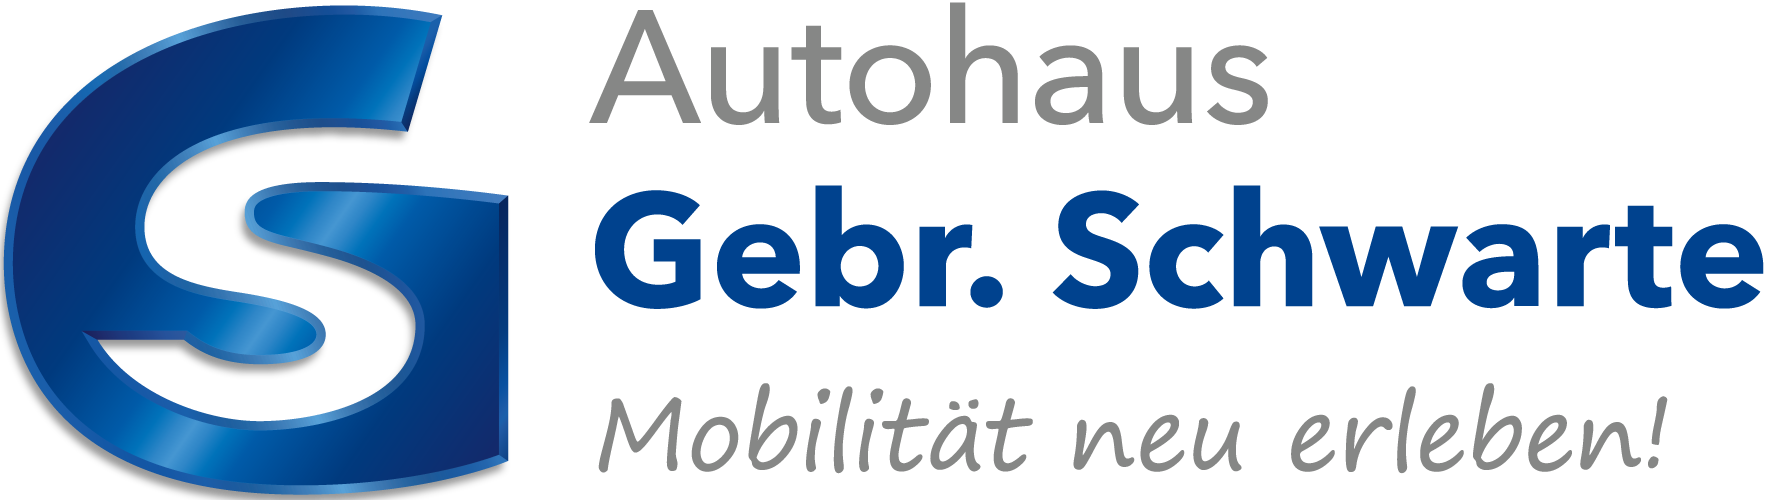 Autohaus Gebr Schwarte Aurich GmbH in Aurich Leasing Angebote